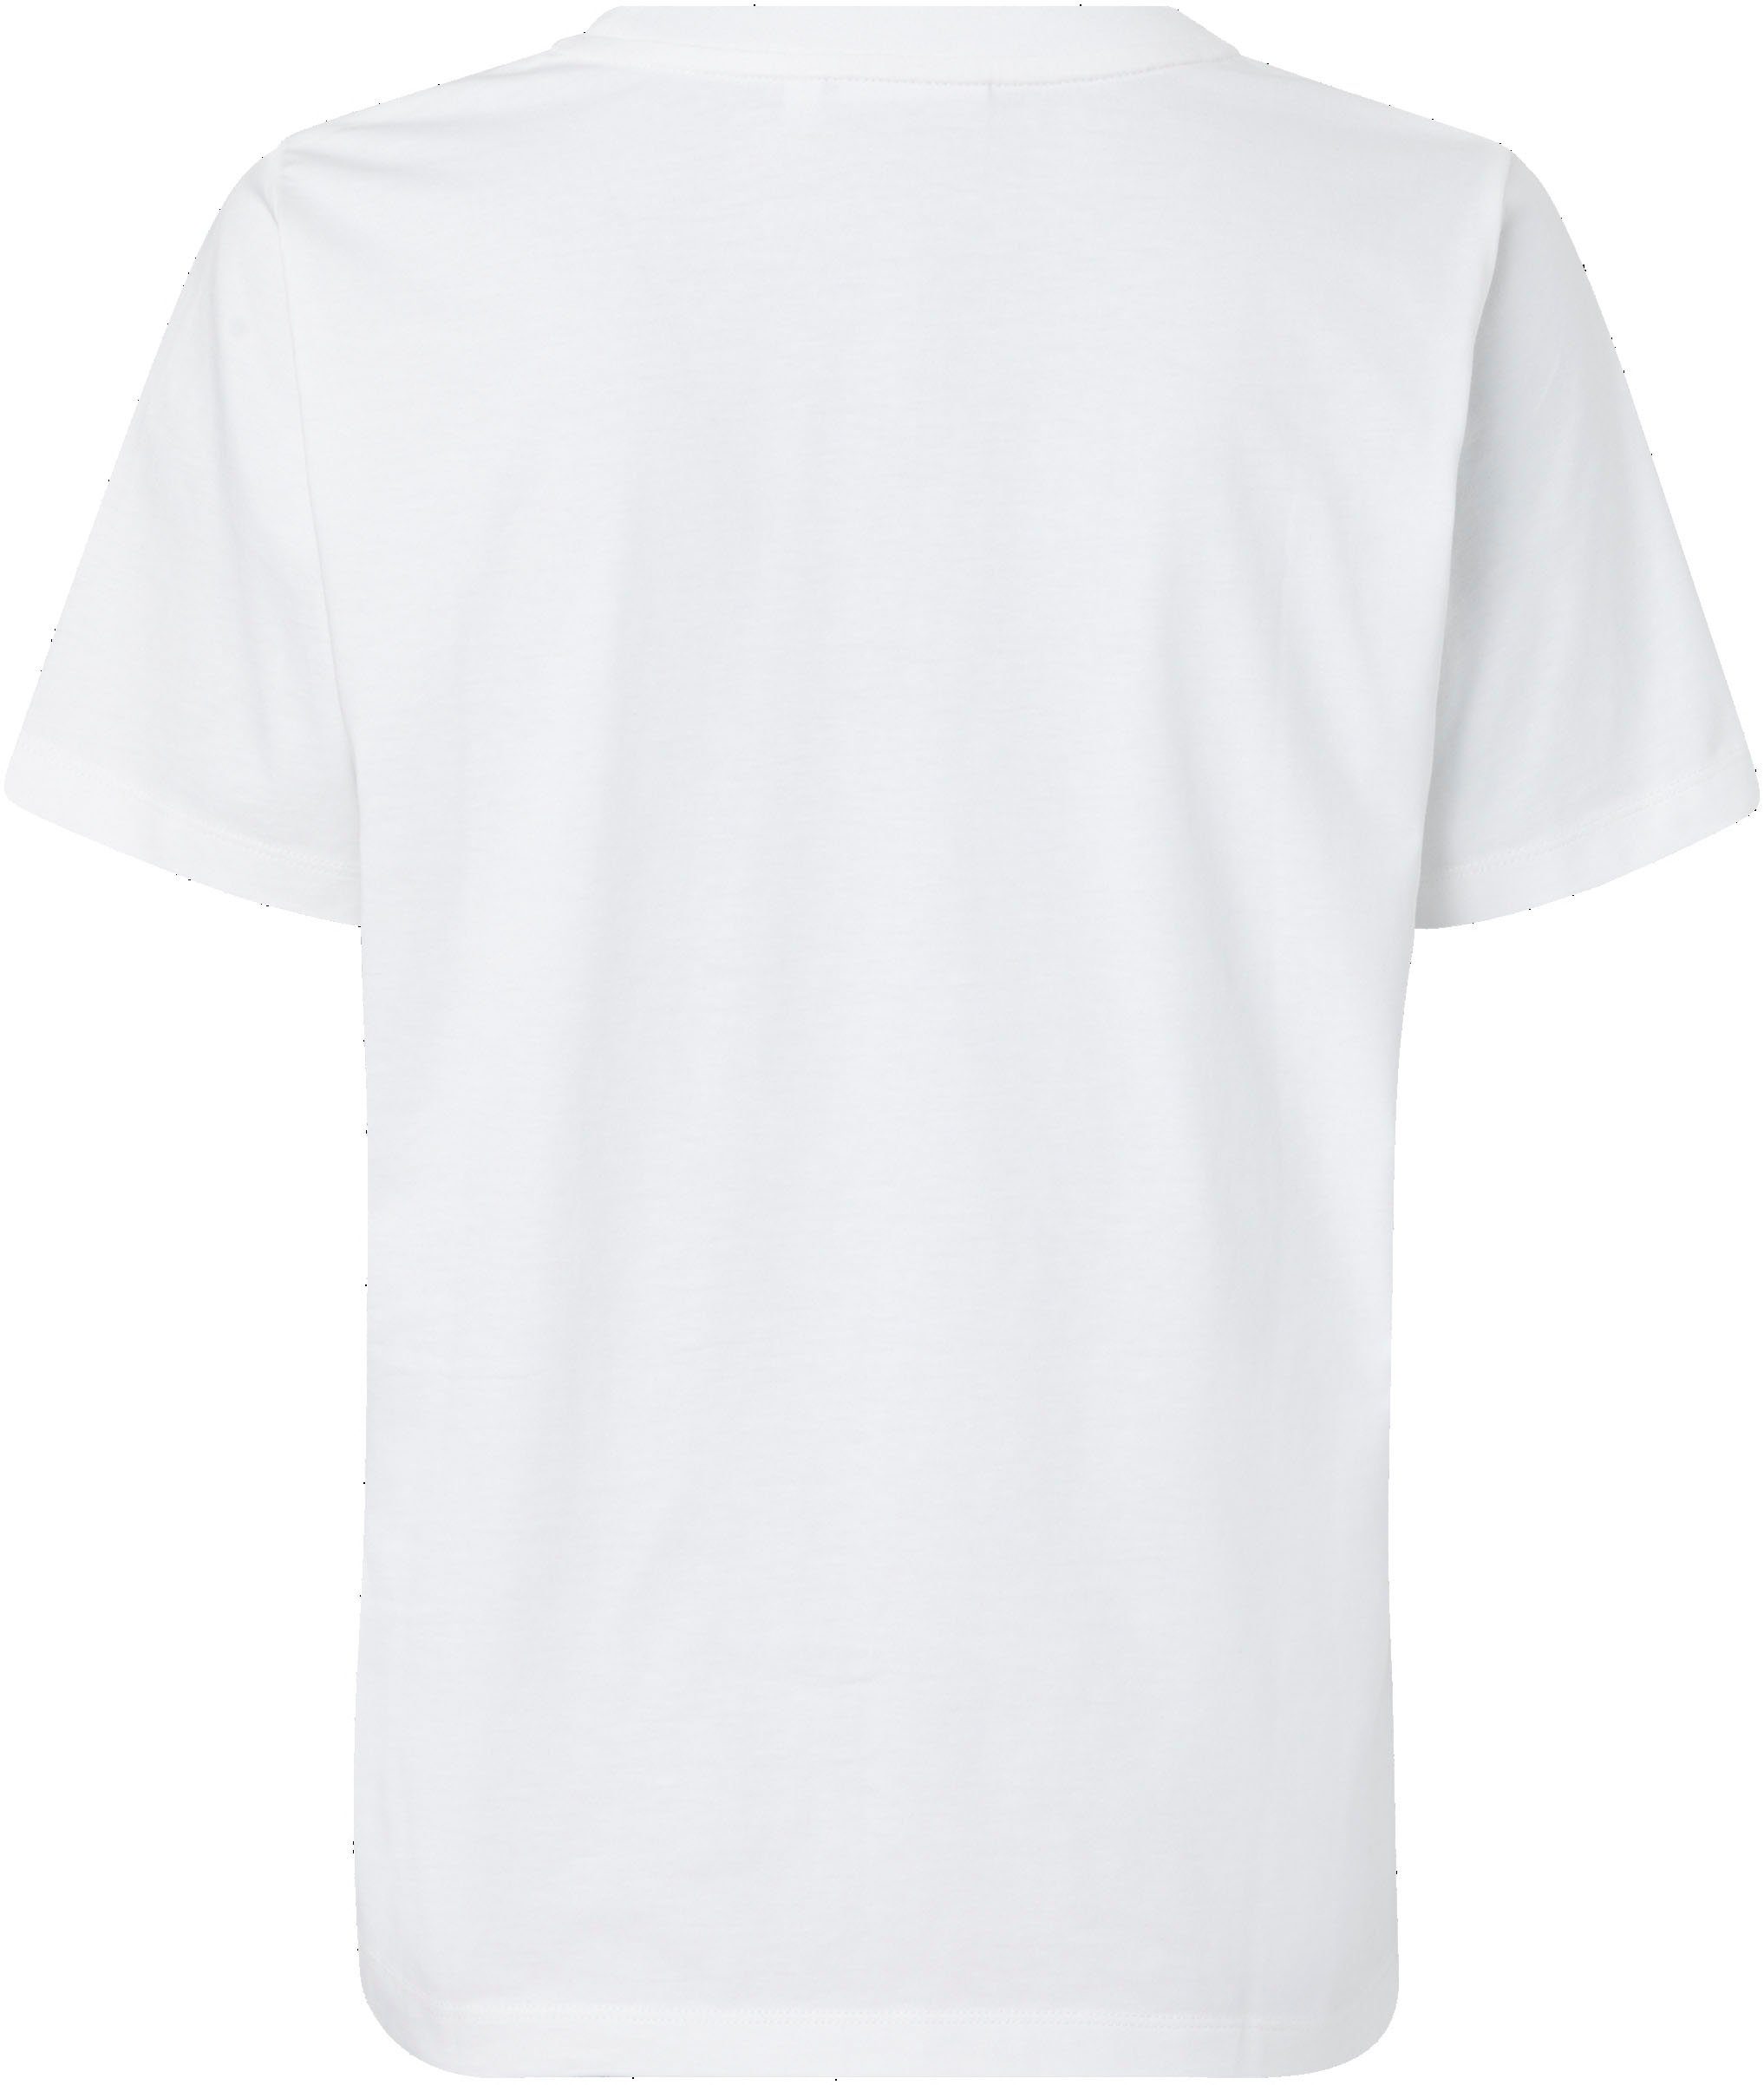 Calvin Klein T-Shirt MICRO aus Bright-White reiner T-SHIRT Baumwolle LOGO